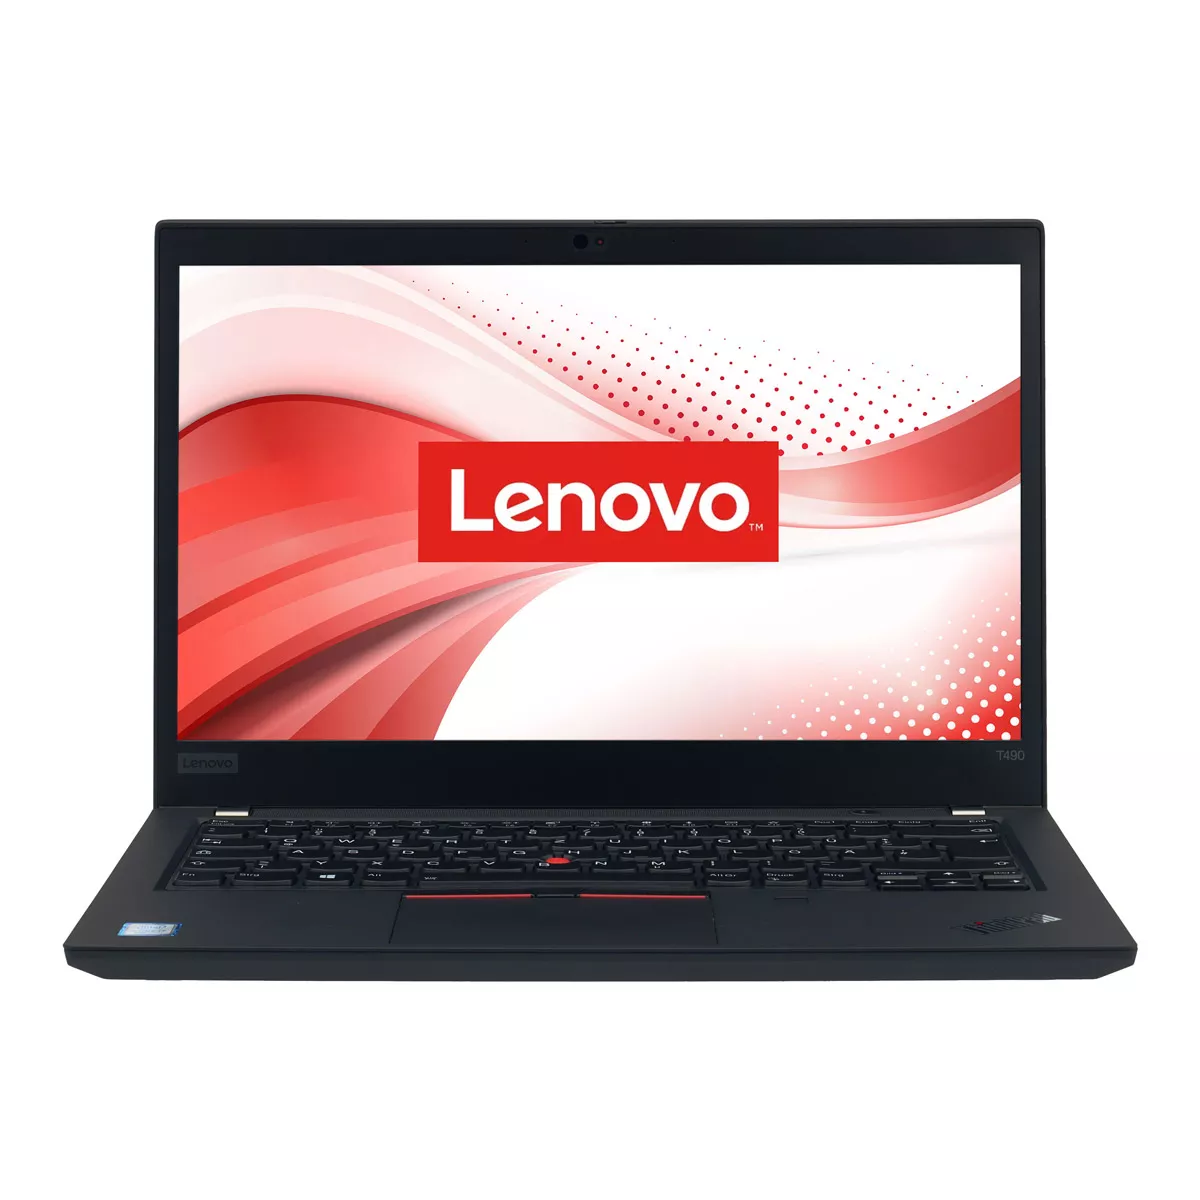 Lenovo ThinkPad T490 Core i5 8365U 8 GB 500 GB M.2 nVME SSD Webcam A+